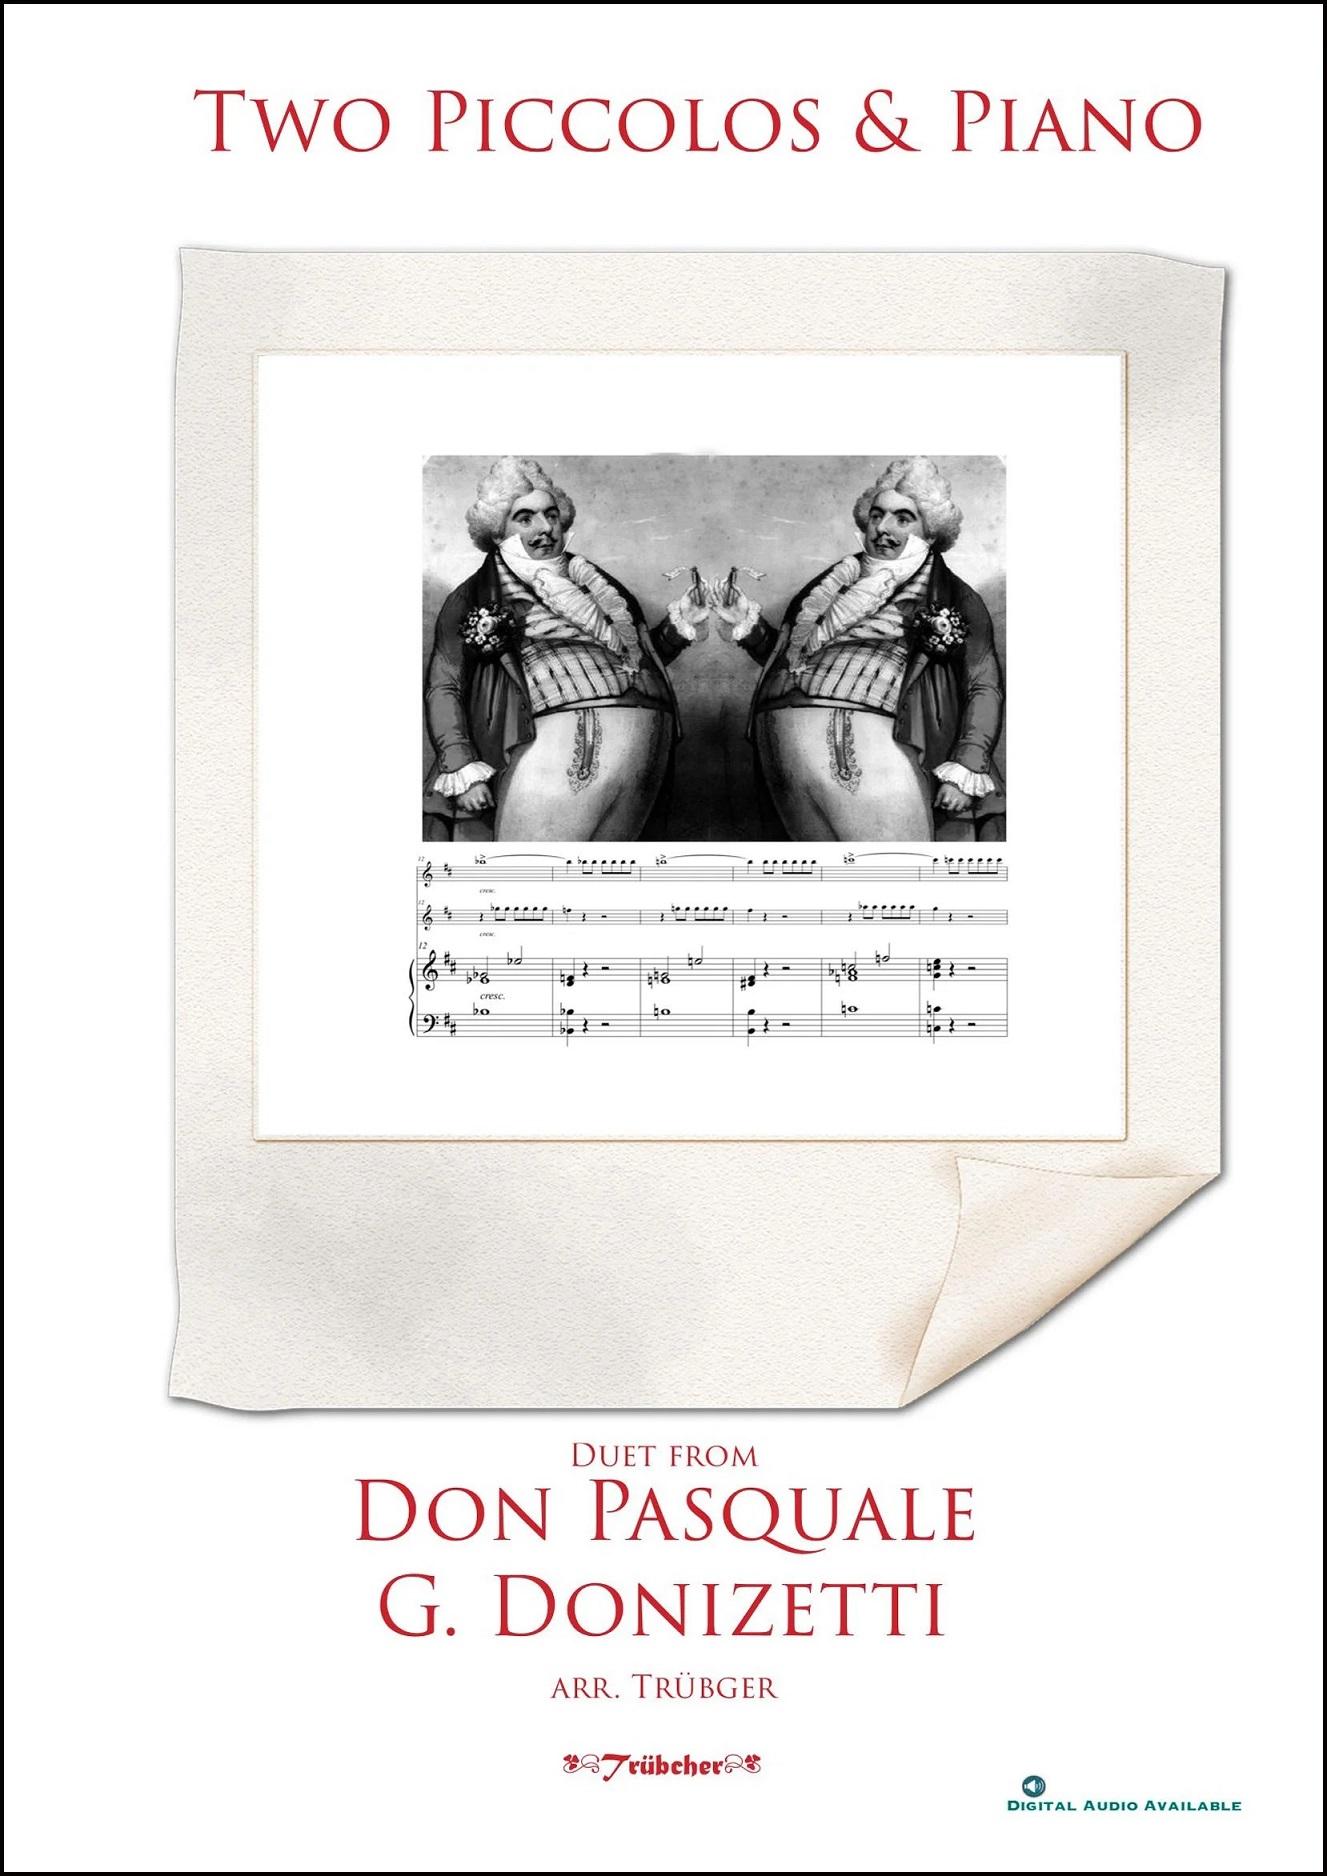 Don Pasquale arr. for 2 piccolos & piano - G. Donizetti | Suono Flauti